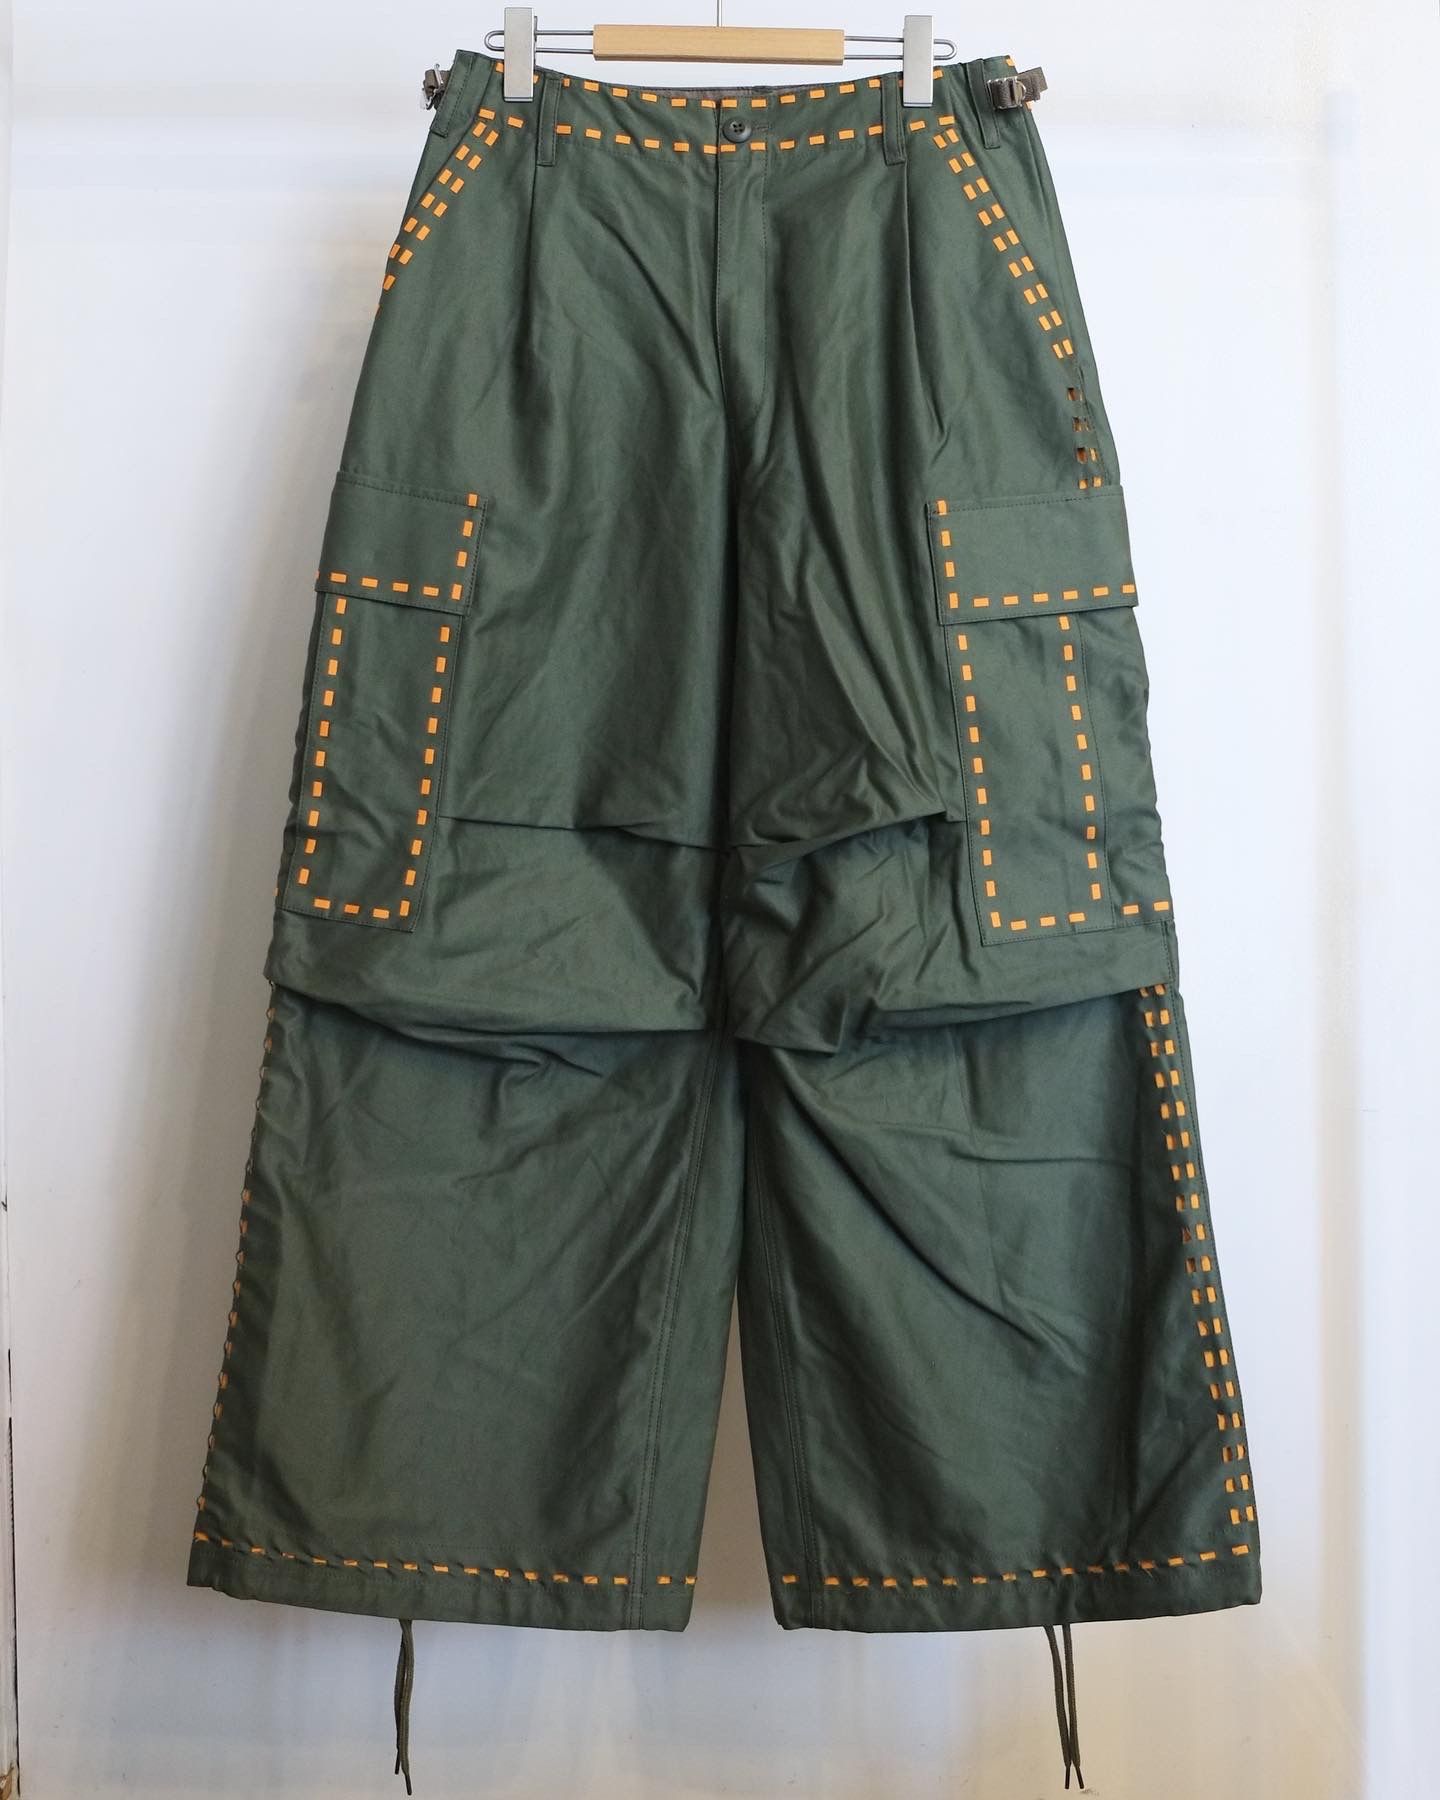 AMOK - 【定番デザイン】Laser Stitch Military Pants / カーゴパンツ